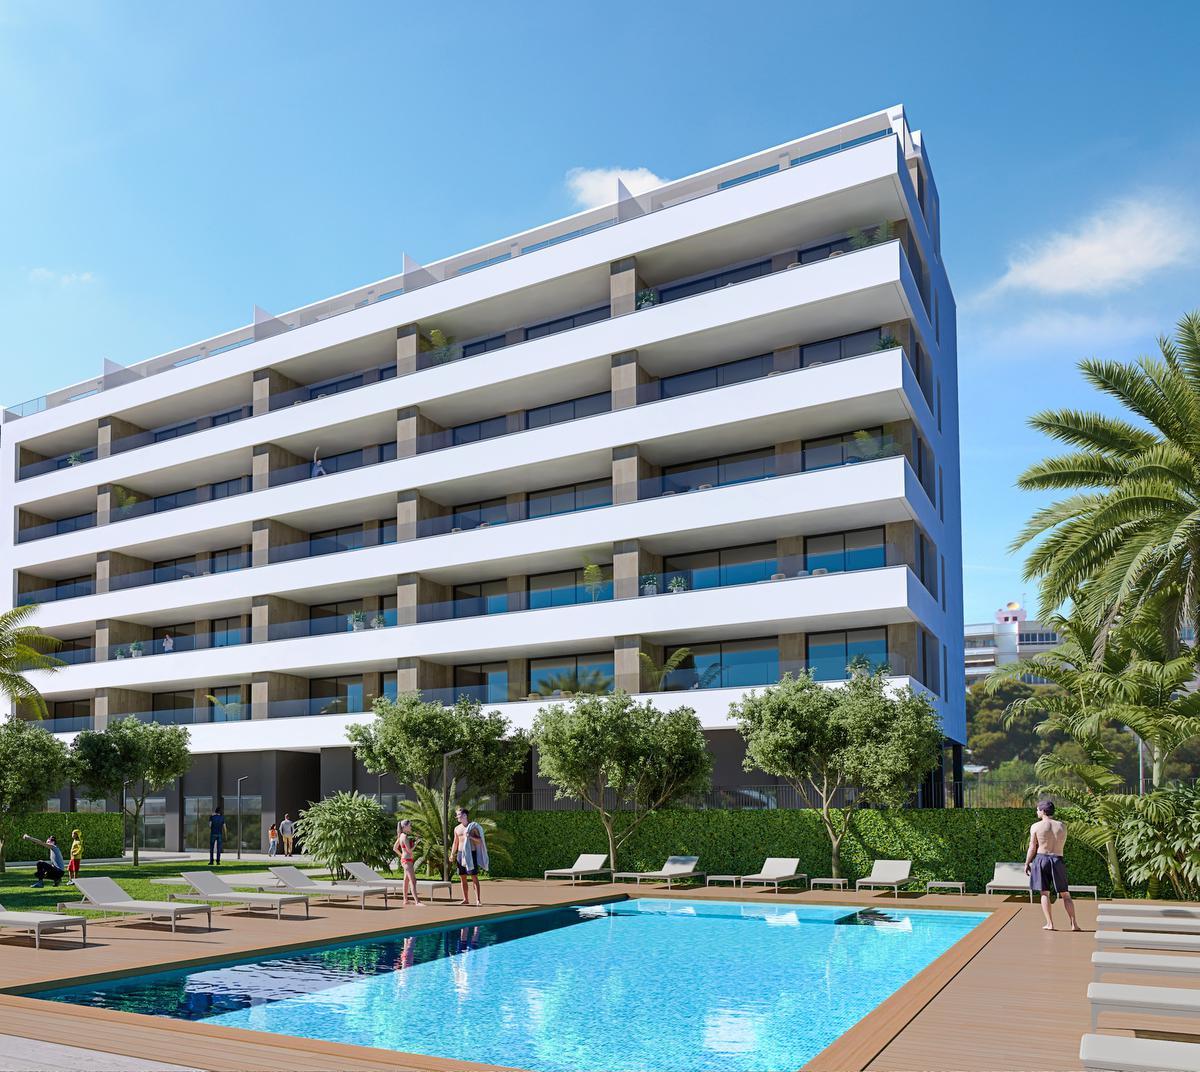 De appartementen in Villa Lucentina hebben een gemiddelde woonoppervlakte van meer dan 100 m². De ruime, zuidgerichte terrassen kijken uit over het gemeenschappelijke zwembad met mediterrane tuin, inclusief petanquebaan en chill-outzone.